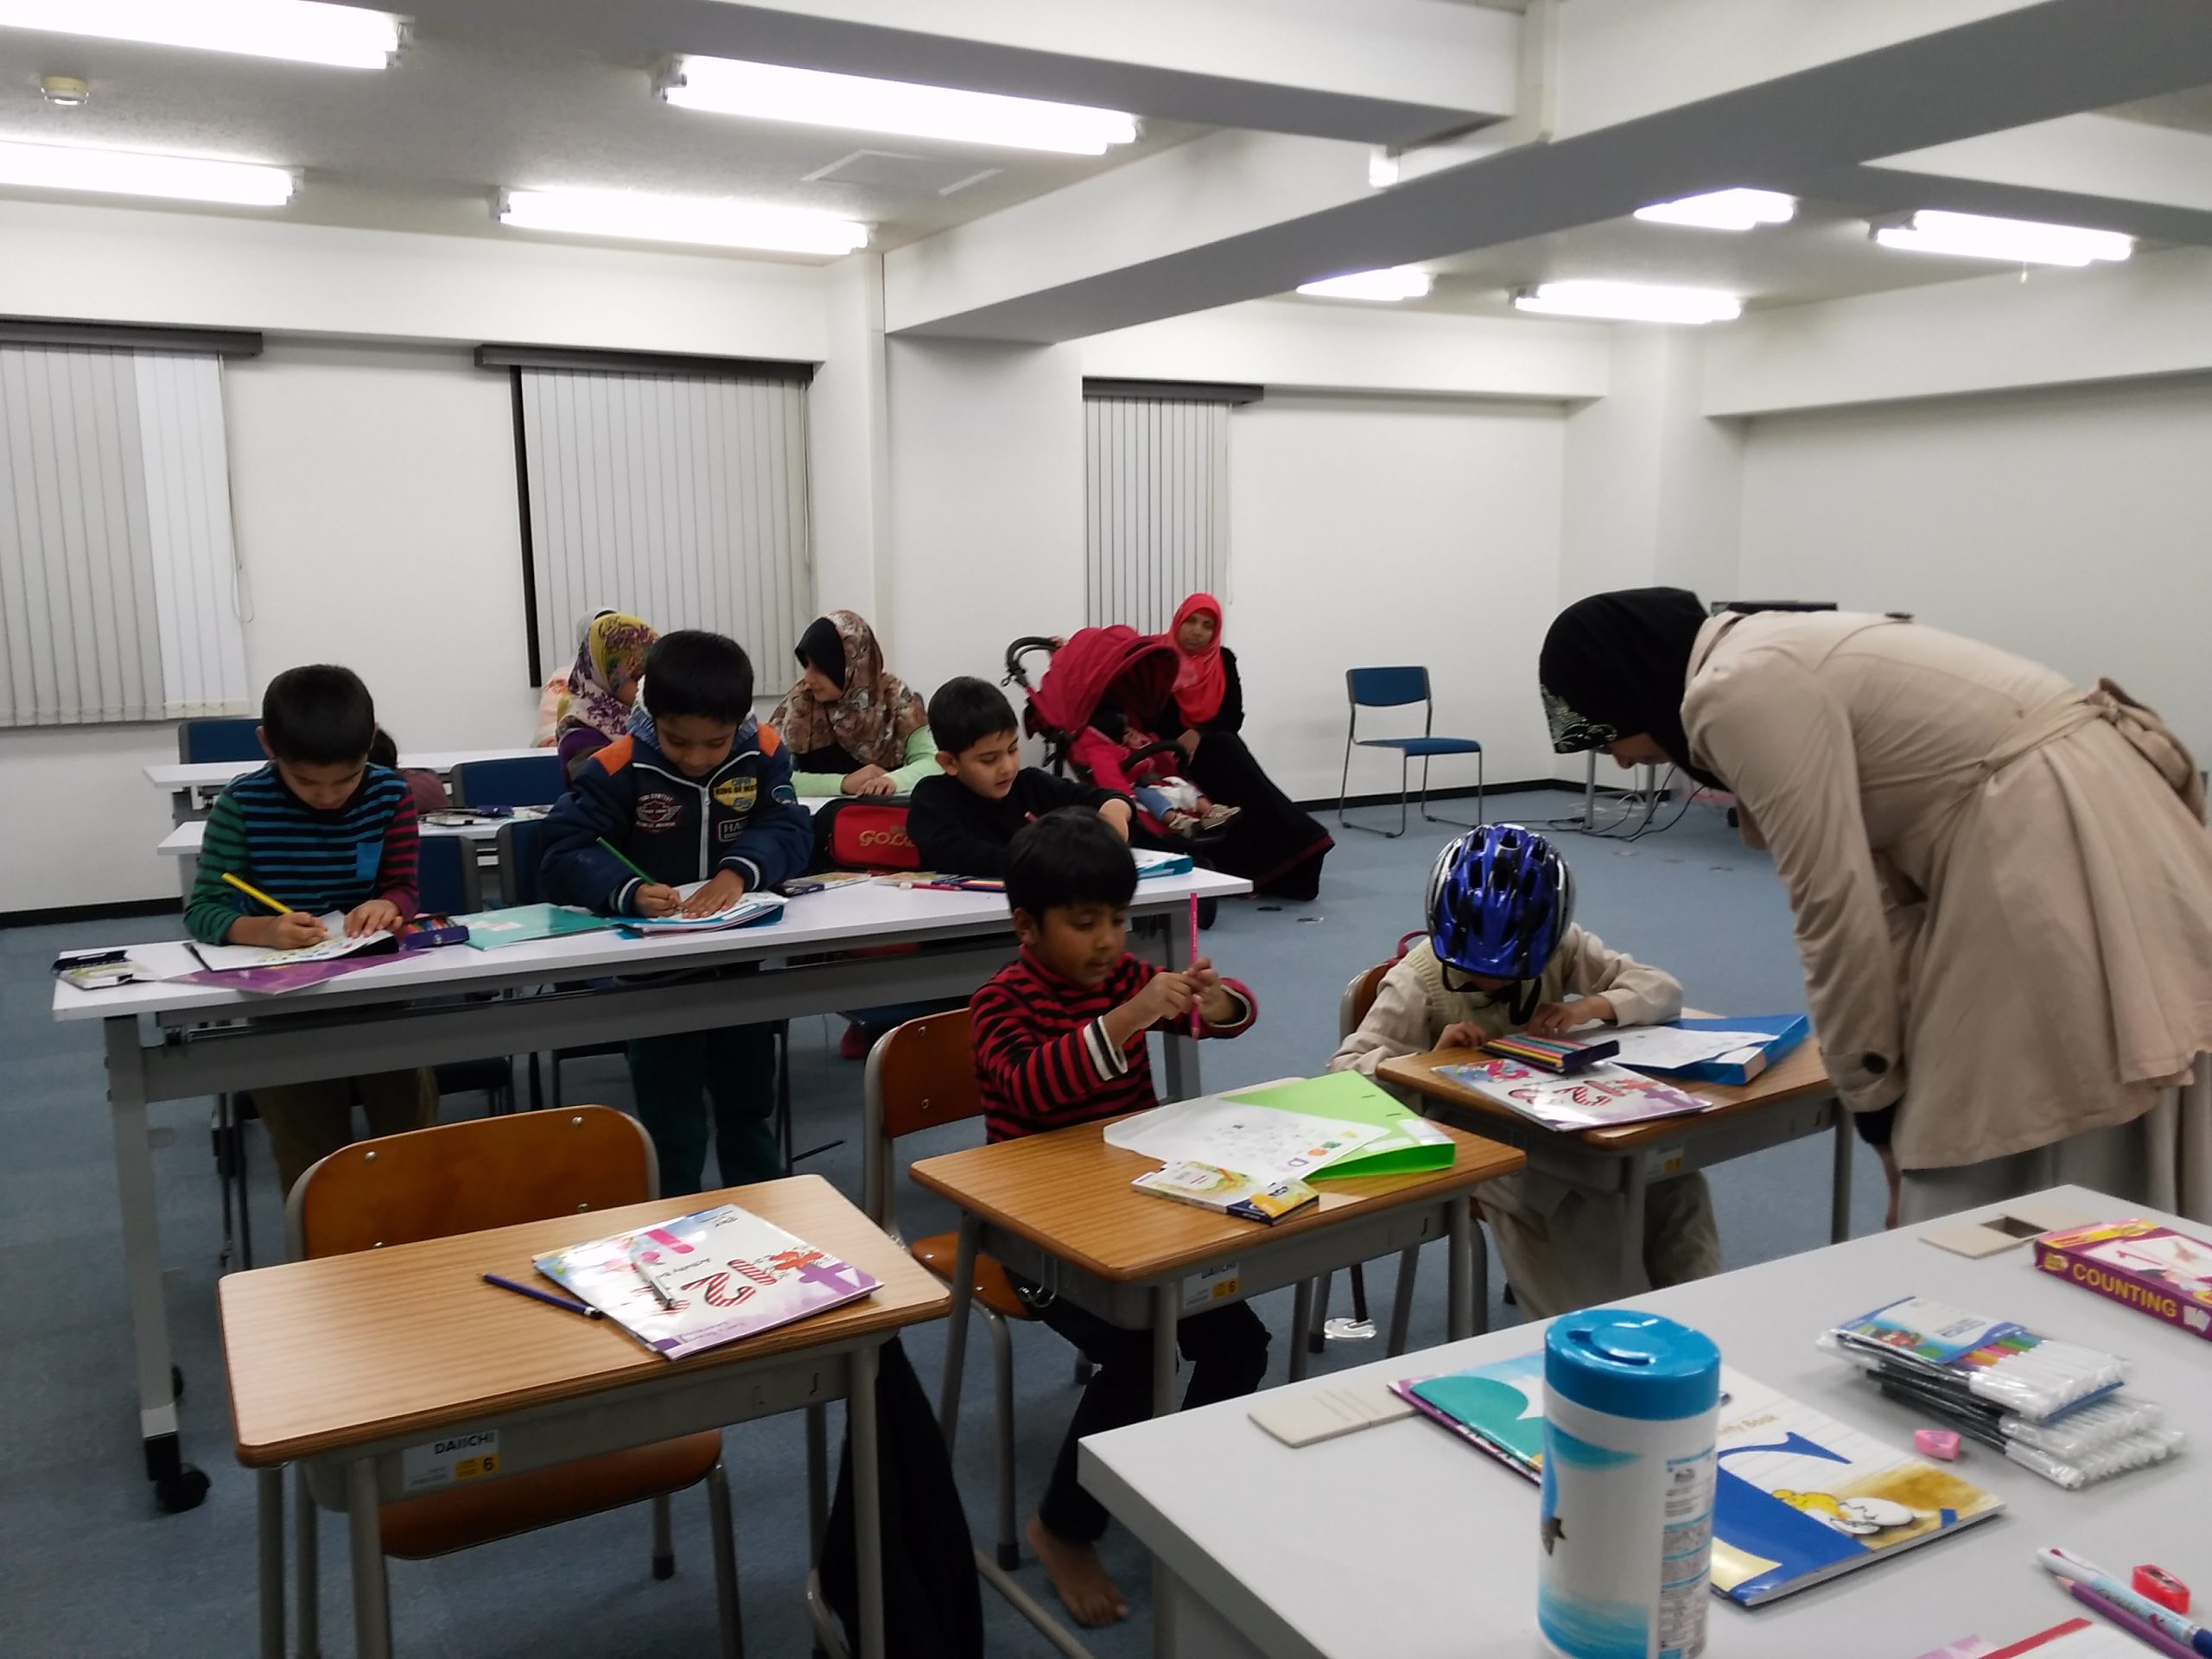 المدرسة واحدة من الثلاث مدارس الإسلامية الدولية في طوكيو، والتي تدرس اللغة العربية والعلوم الإسلامية